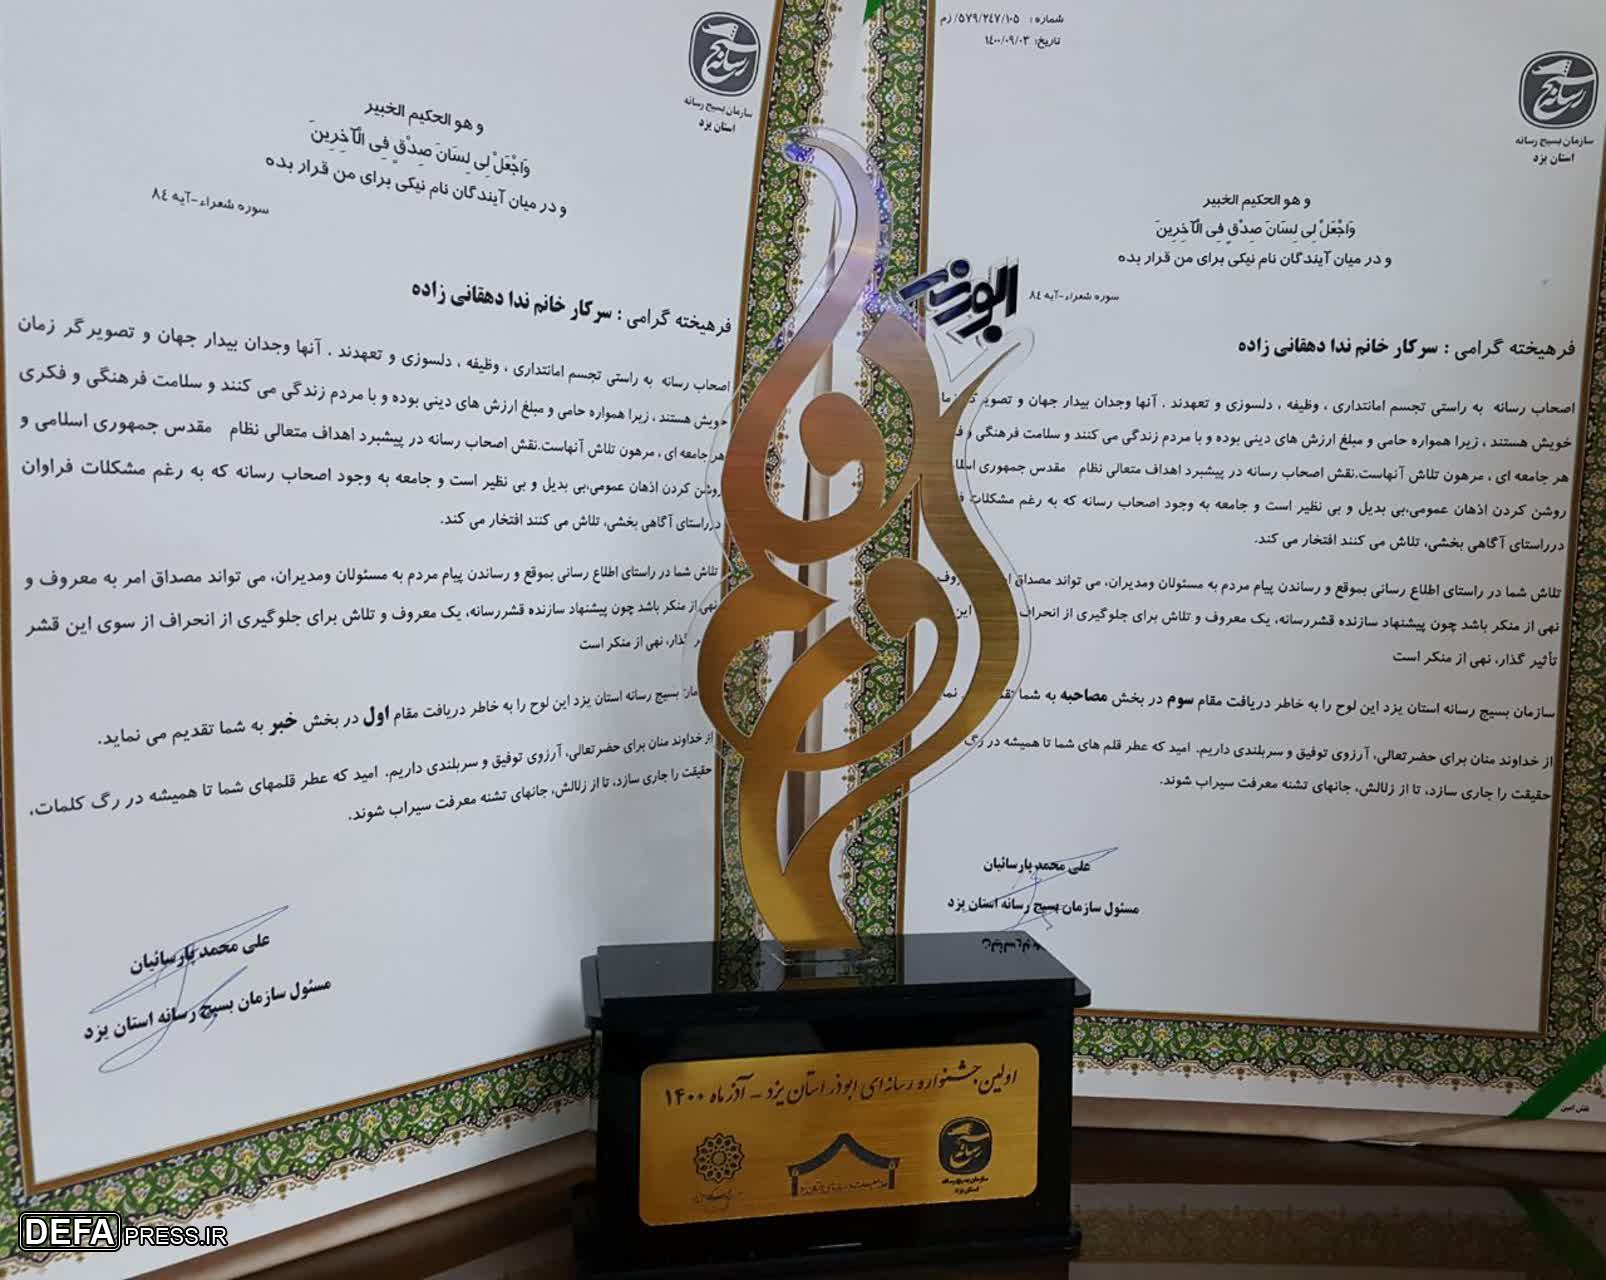 خبرنگار دفاع پرس در یزد مقام اول و سوم جشنواره ابوذر را کسب کرد